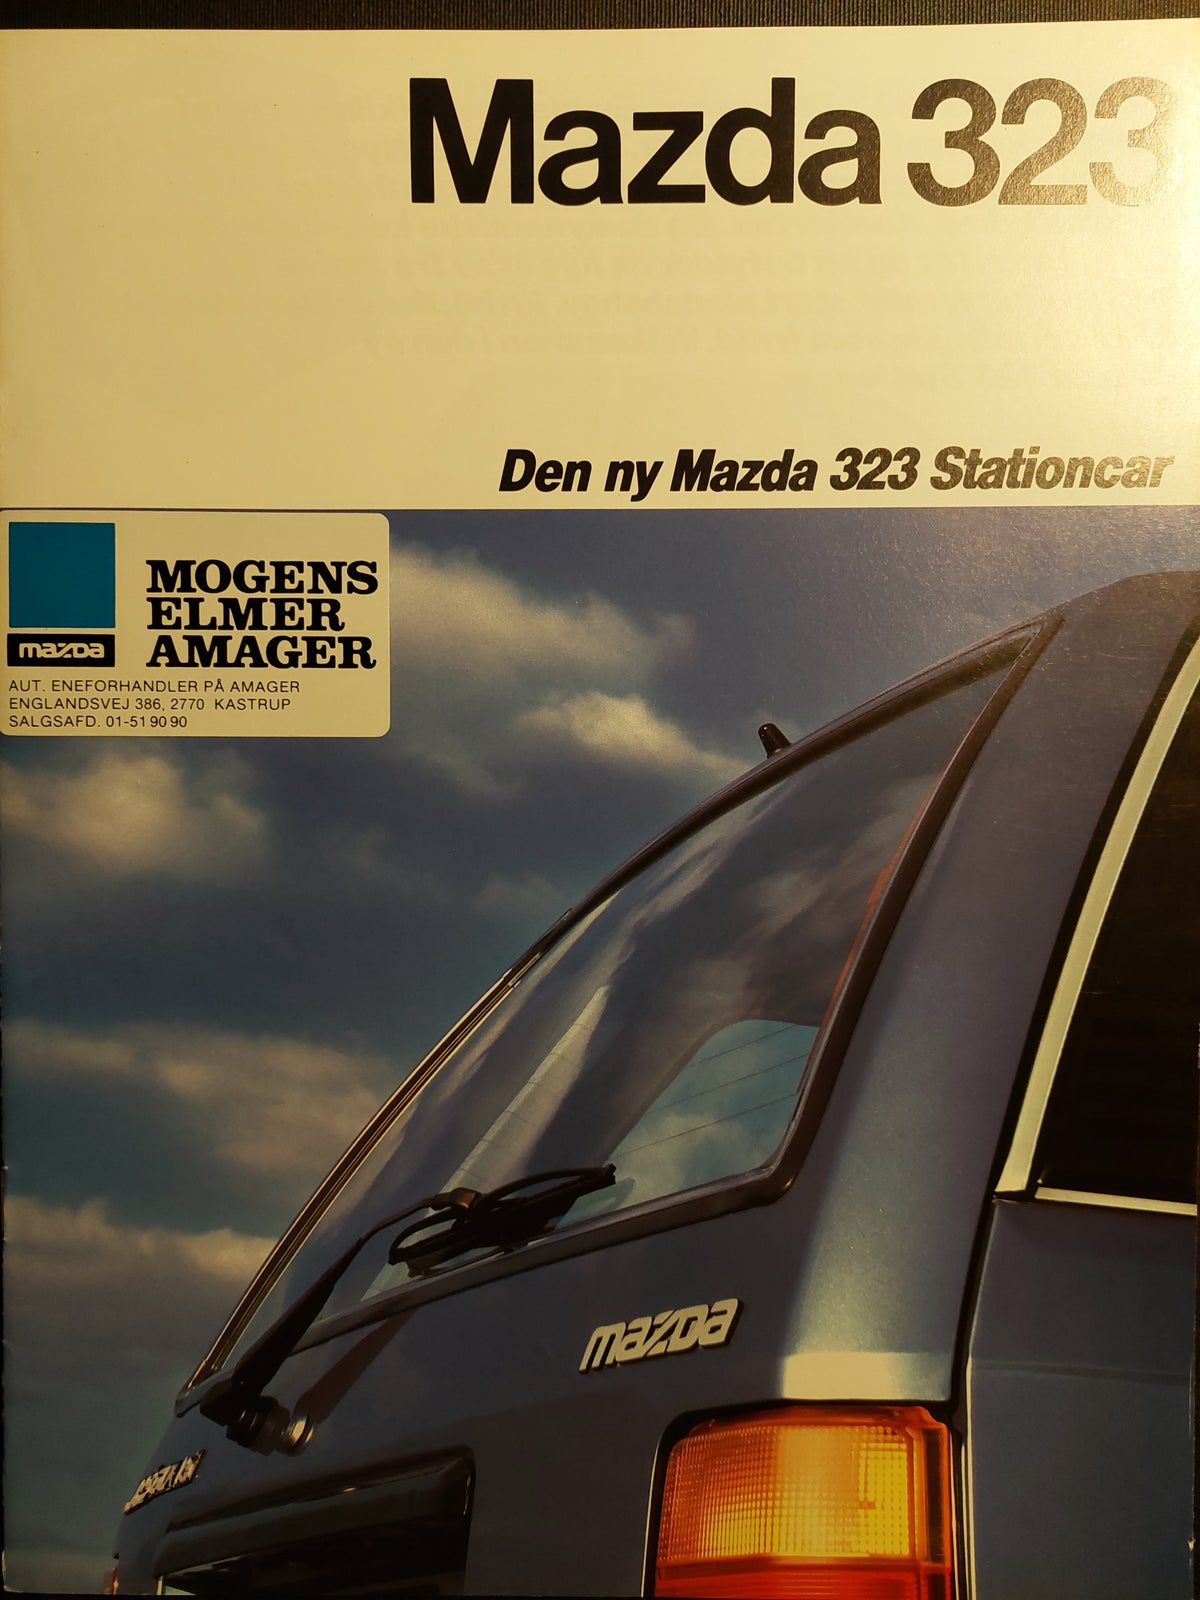 Urskive målbar Hvile Brochure, Mazda 323 Stationcar - dba.dk - Køb og Salg af Nyt og Brugt